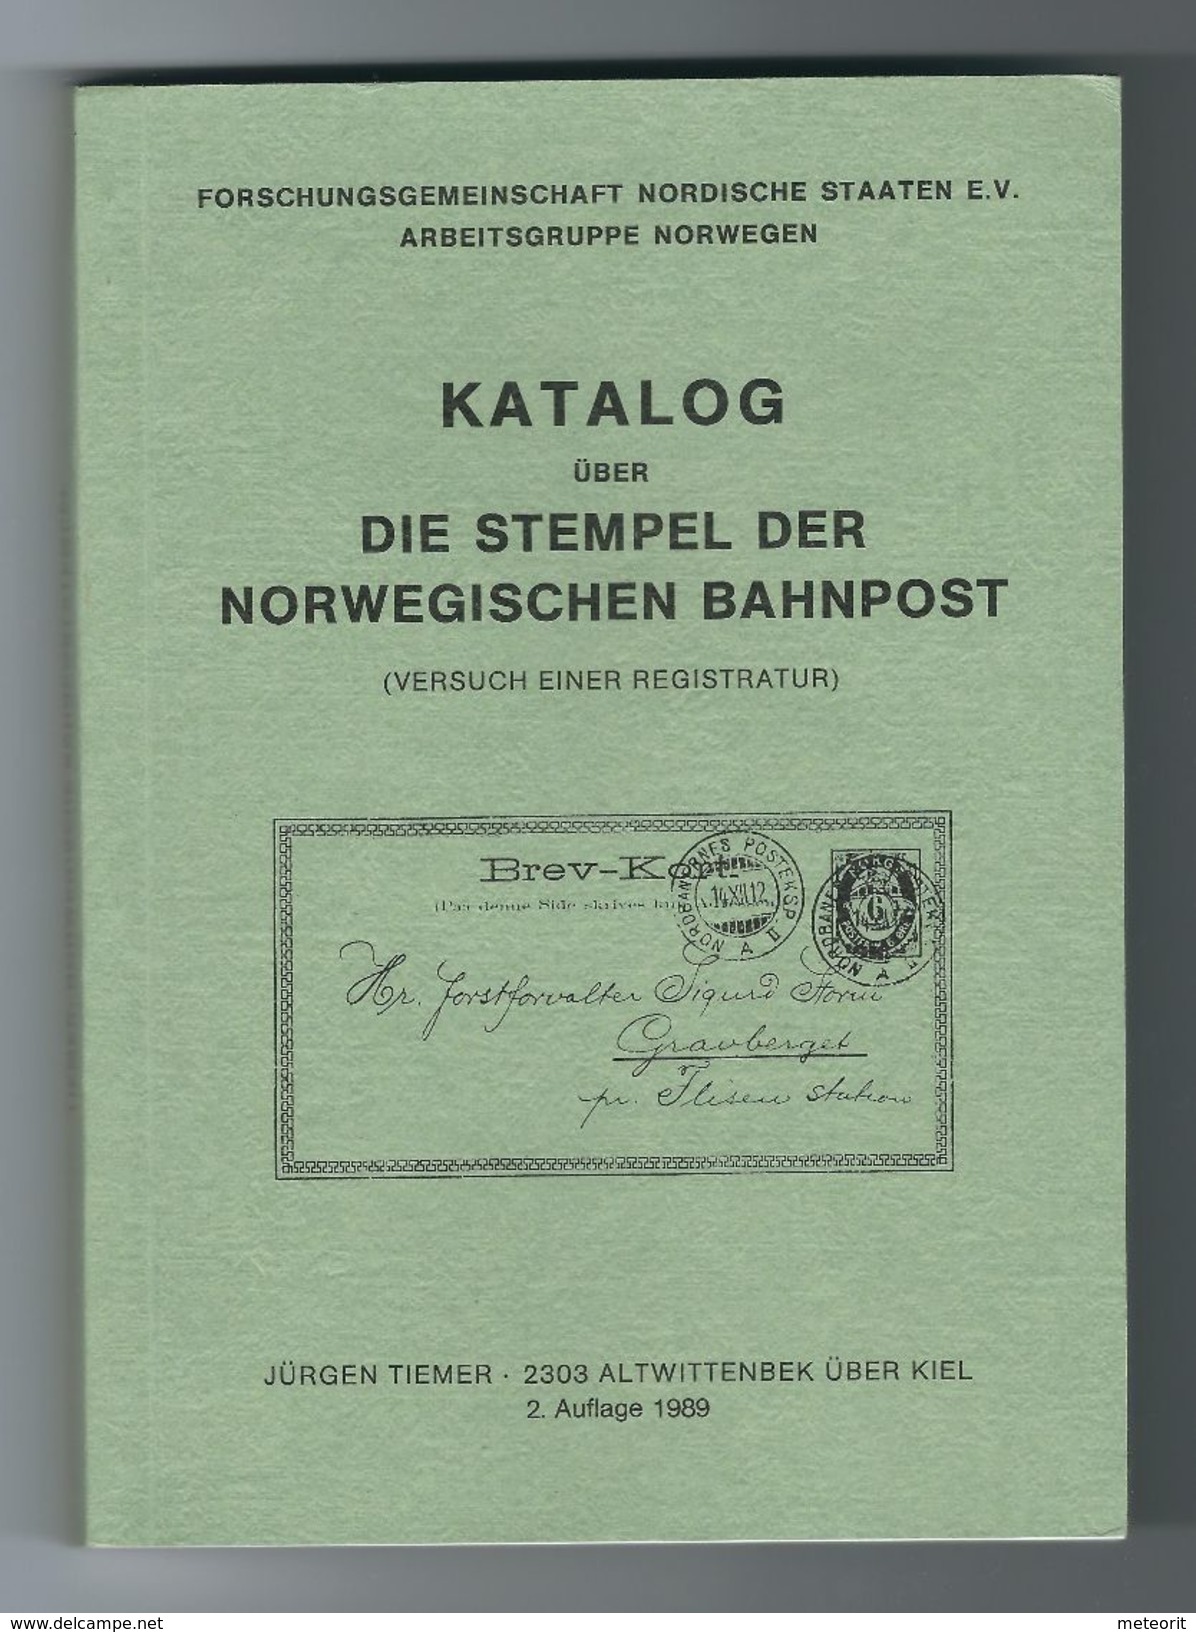 Katalog über "Die Stempel Der Norwegischen Bahnpost" Von Jürgen Tiemer, 2. Auflage 1989, 240 Seiten - Eisenbahnen